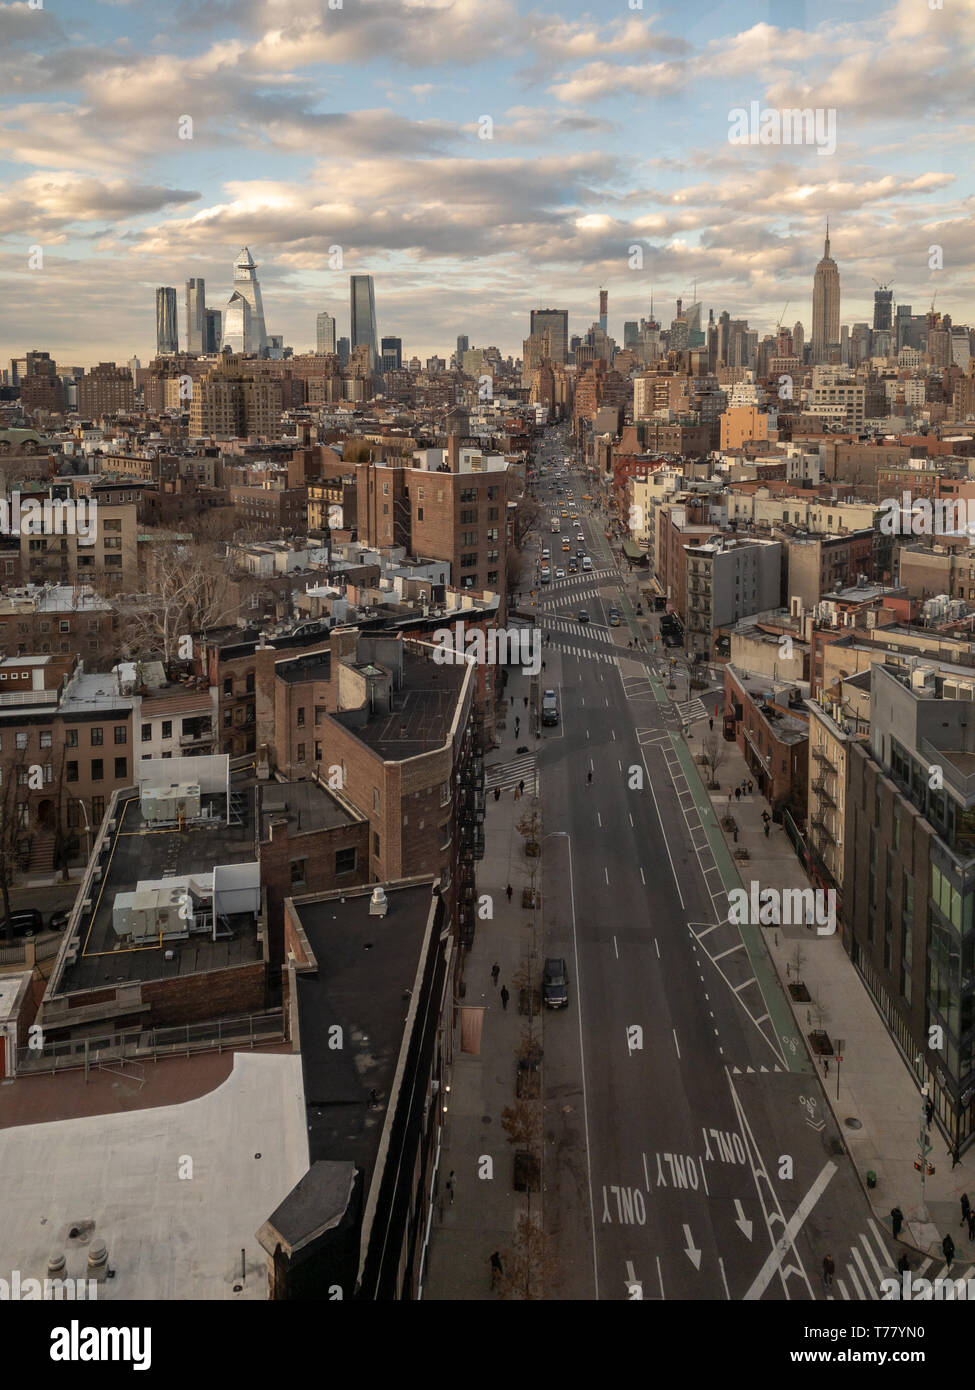 Midtown Manhattan panoramic skyline looking North in New York City. Stock Photo